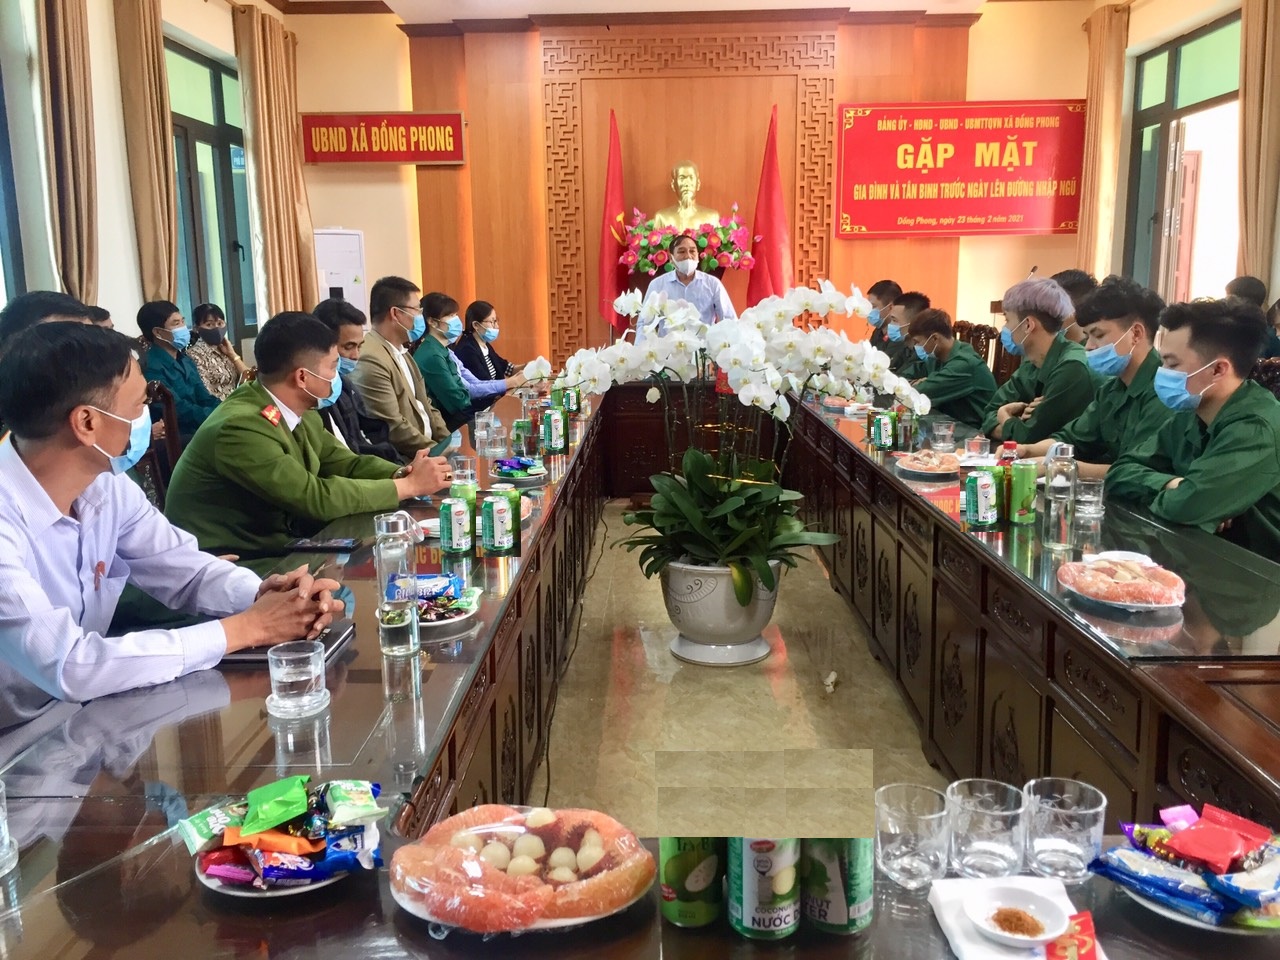 Hội đồng nghĩa vụ quân sự xã Đồng Phong tổ chức gặp mặt gia đình và tân binh trước ngày lên đường nhập ngũ